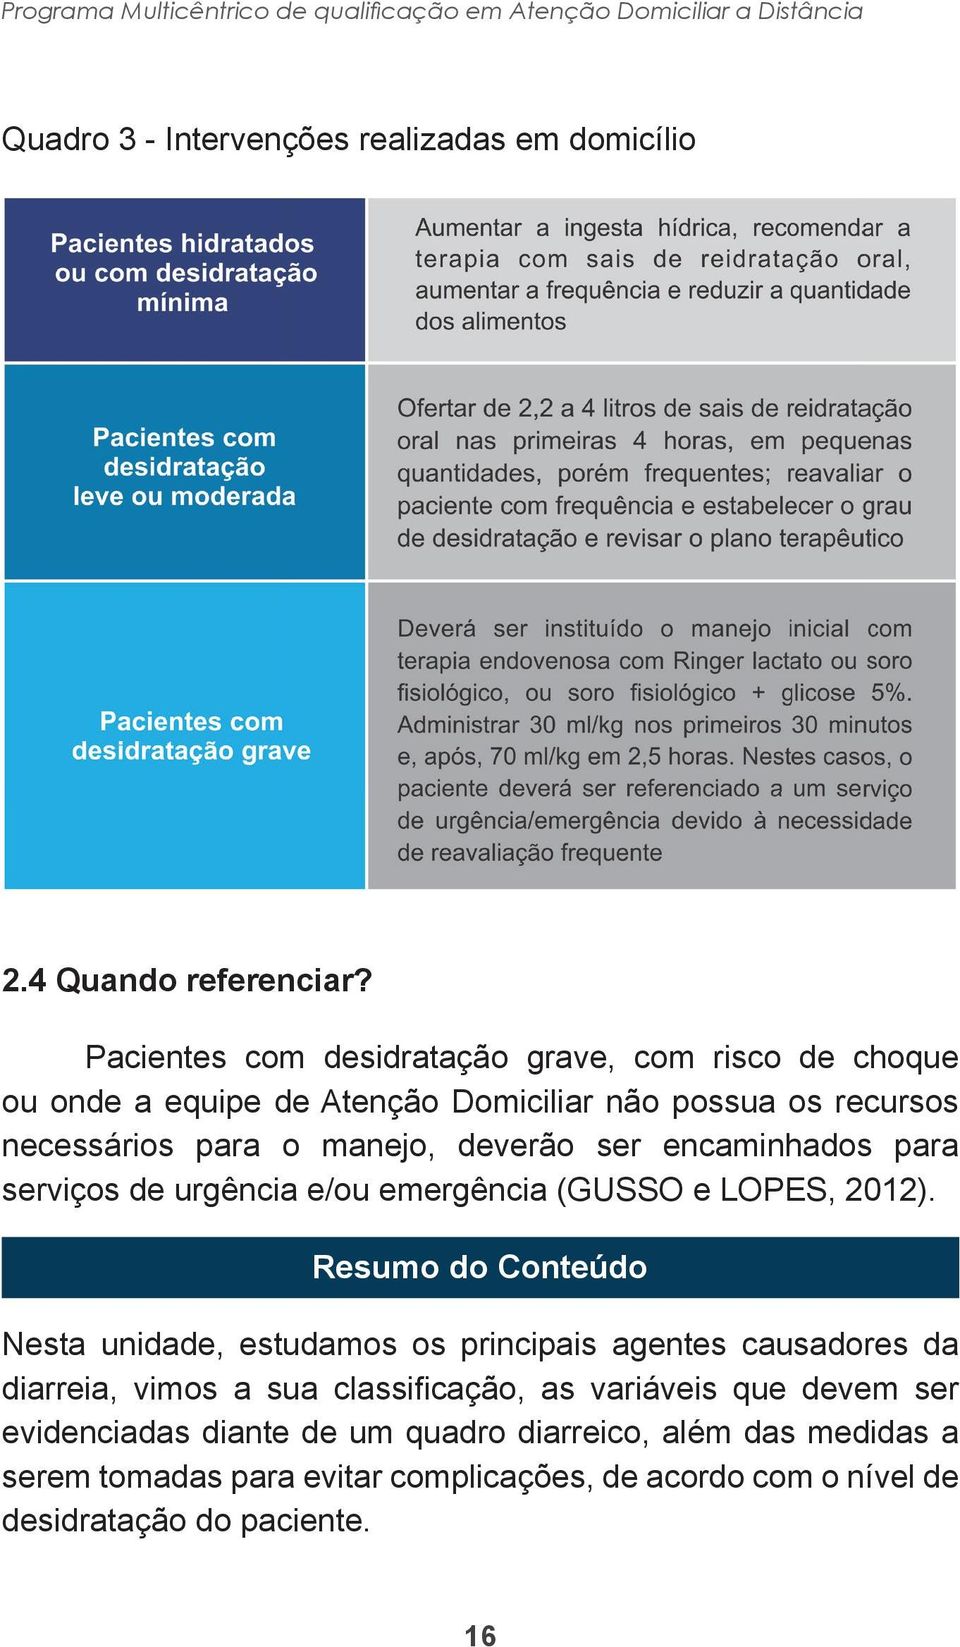 para serviços de urgência e/ou emergência (GUSSO e LOPES, 2012).